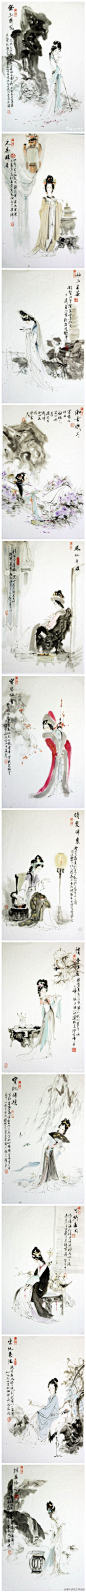 【神韵红楼】淡淡水墨色，浓郁中国风。来自王义胜的一组水墨组图《金陵十二钗》，妙在用淡淡的水墨色，诠释了她们华美又跌宕的人生。